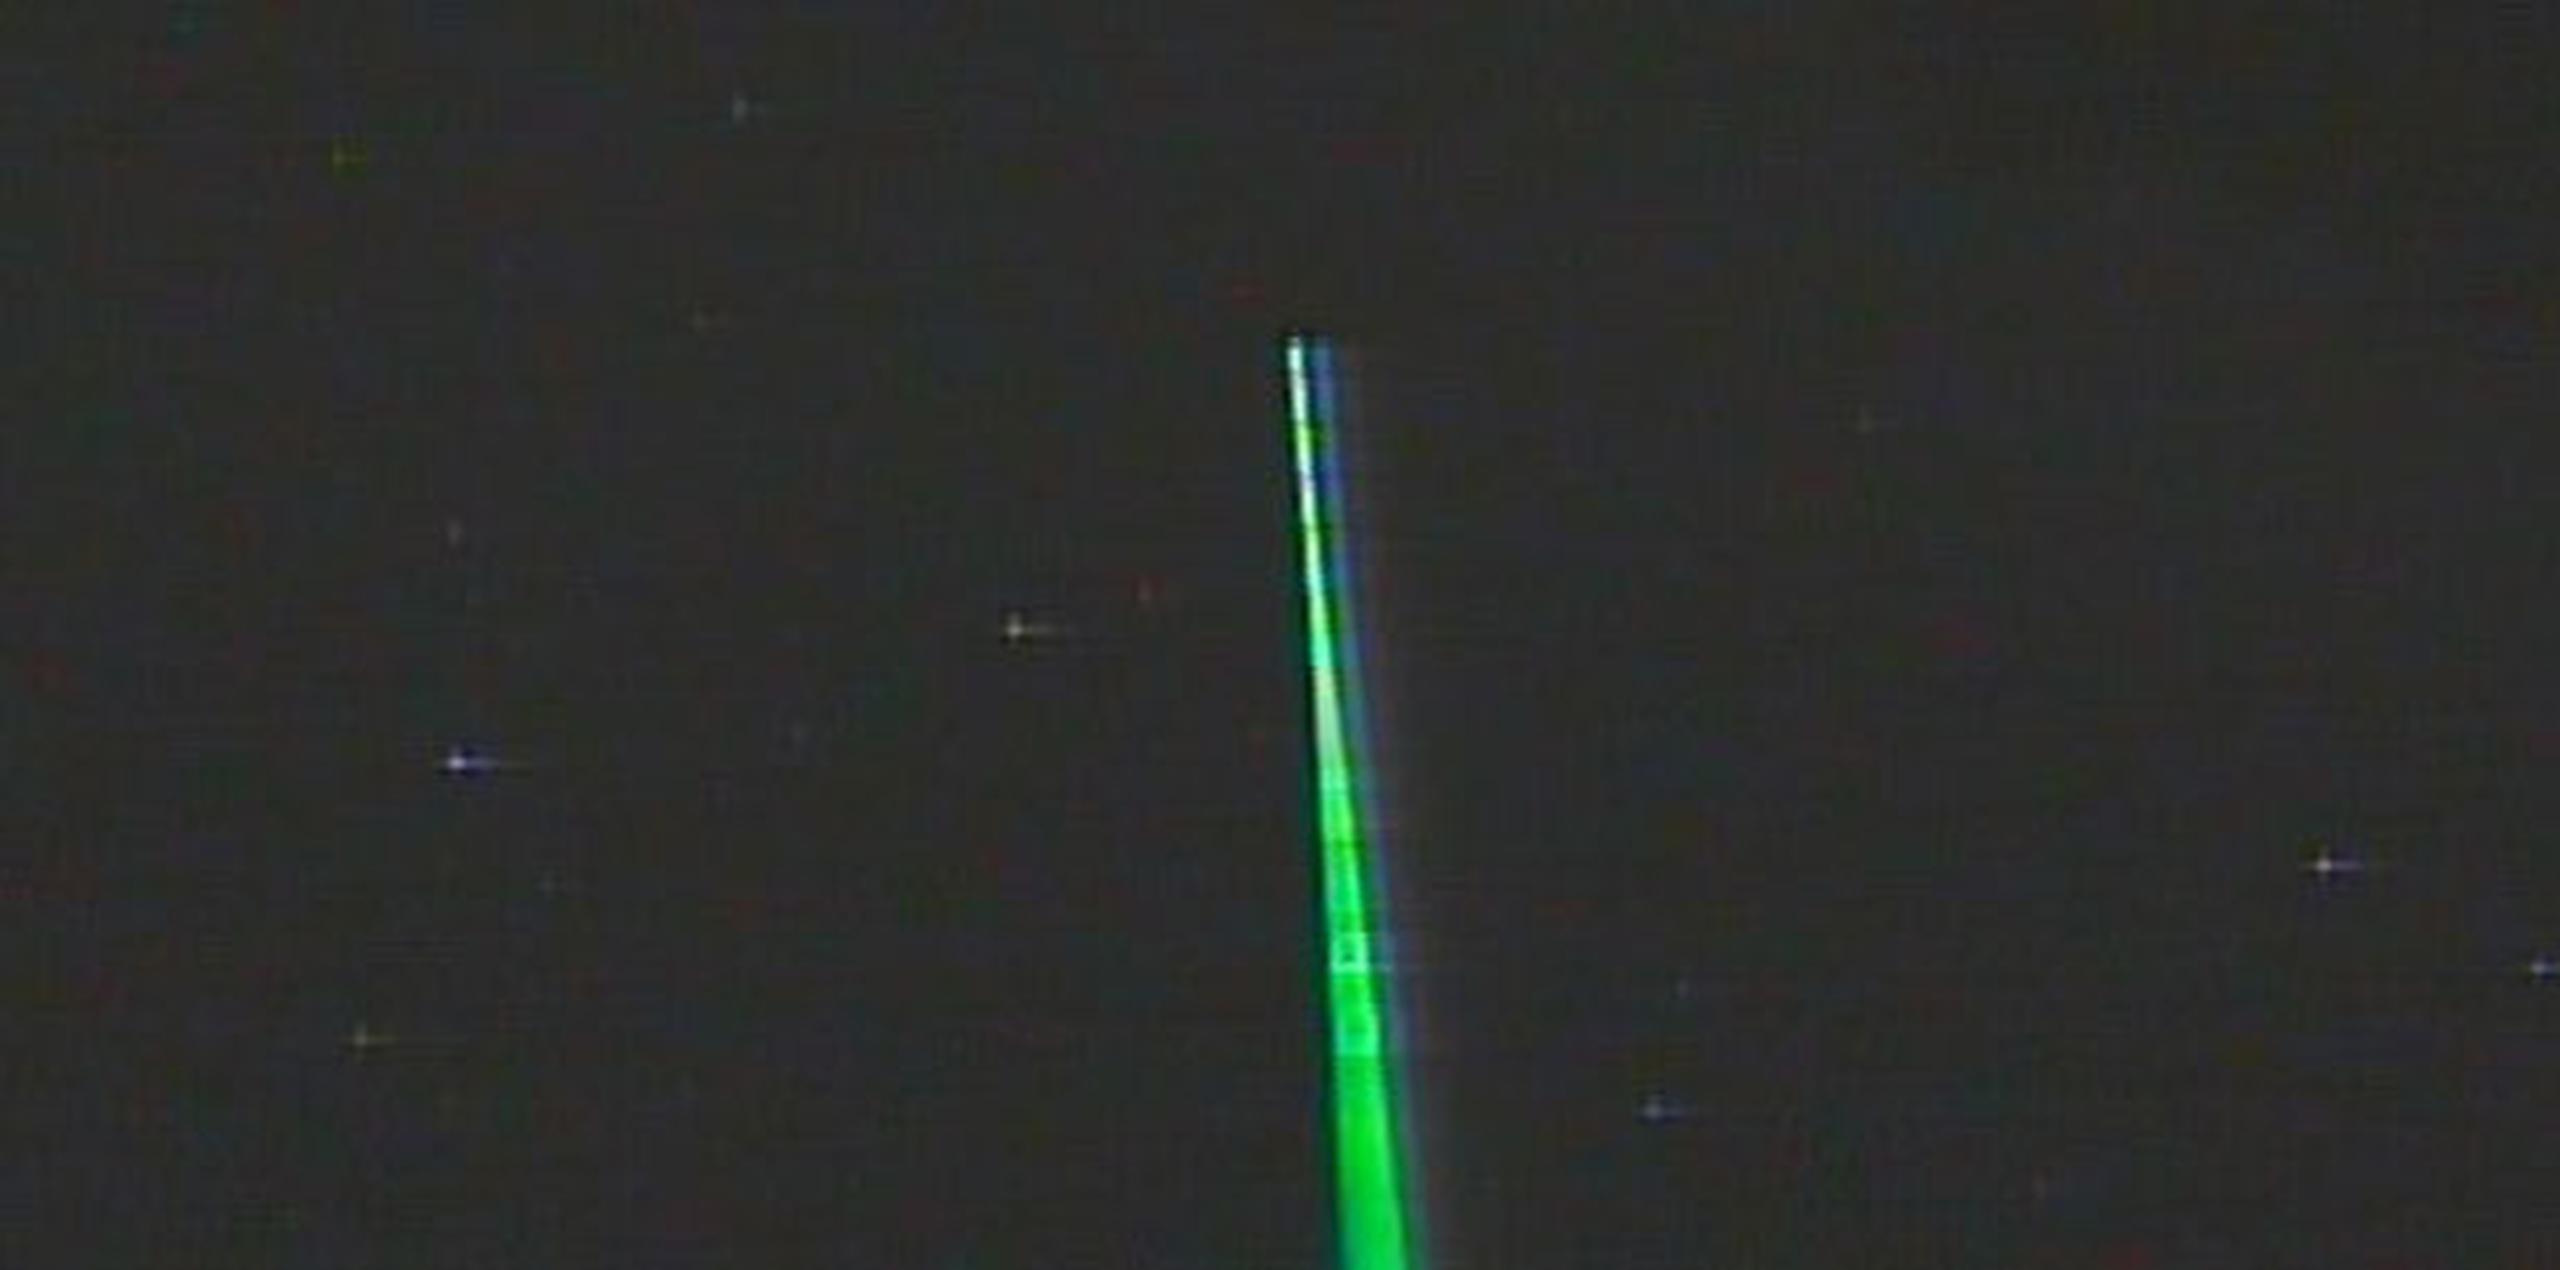 Algunos apuntadores de laser verdes y de menor potencia son utilizados durante actividades educativas para explicar la ubicación de objetos astronómicos. (Suministrada)